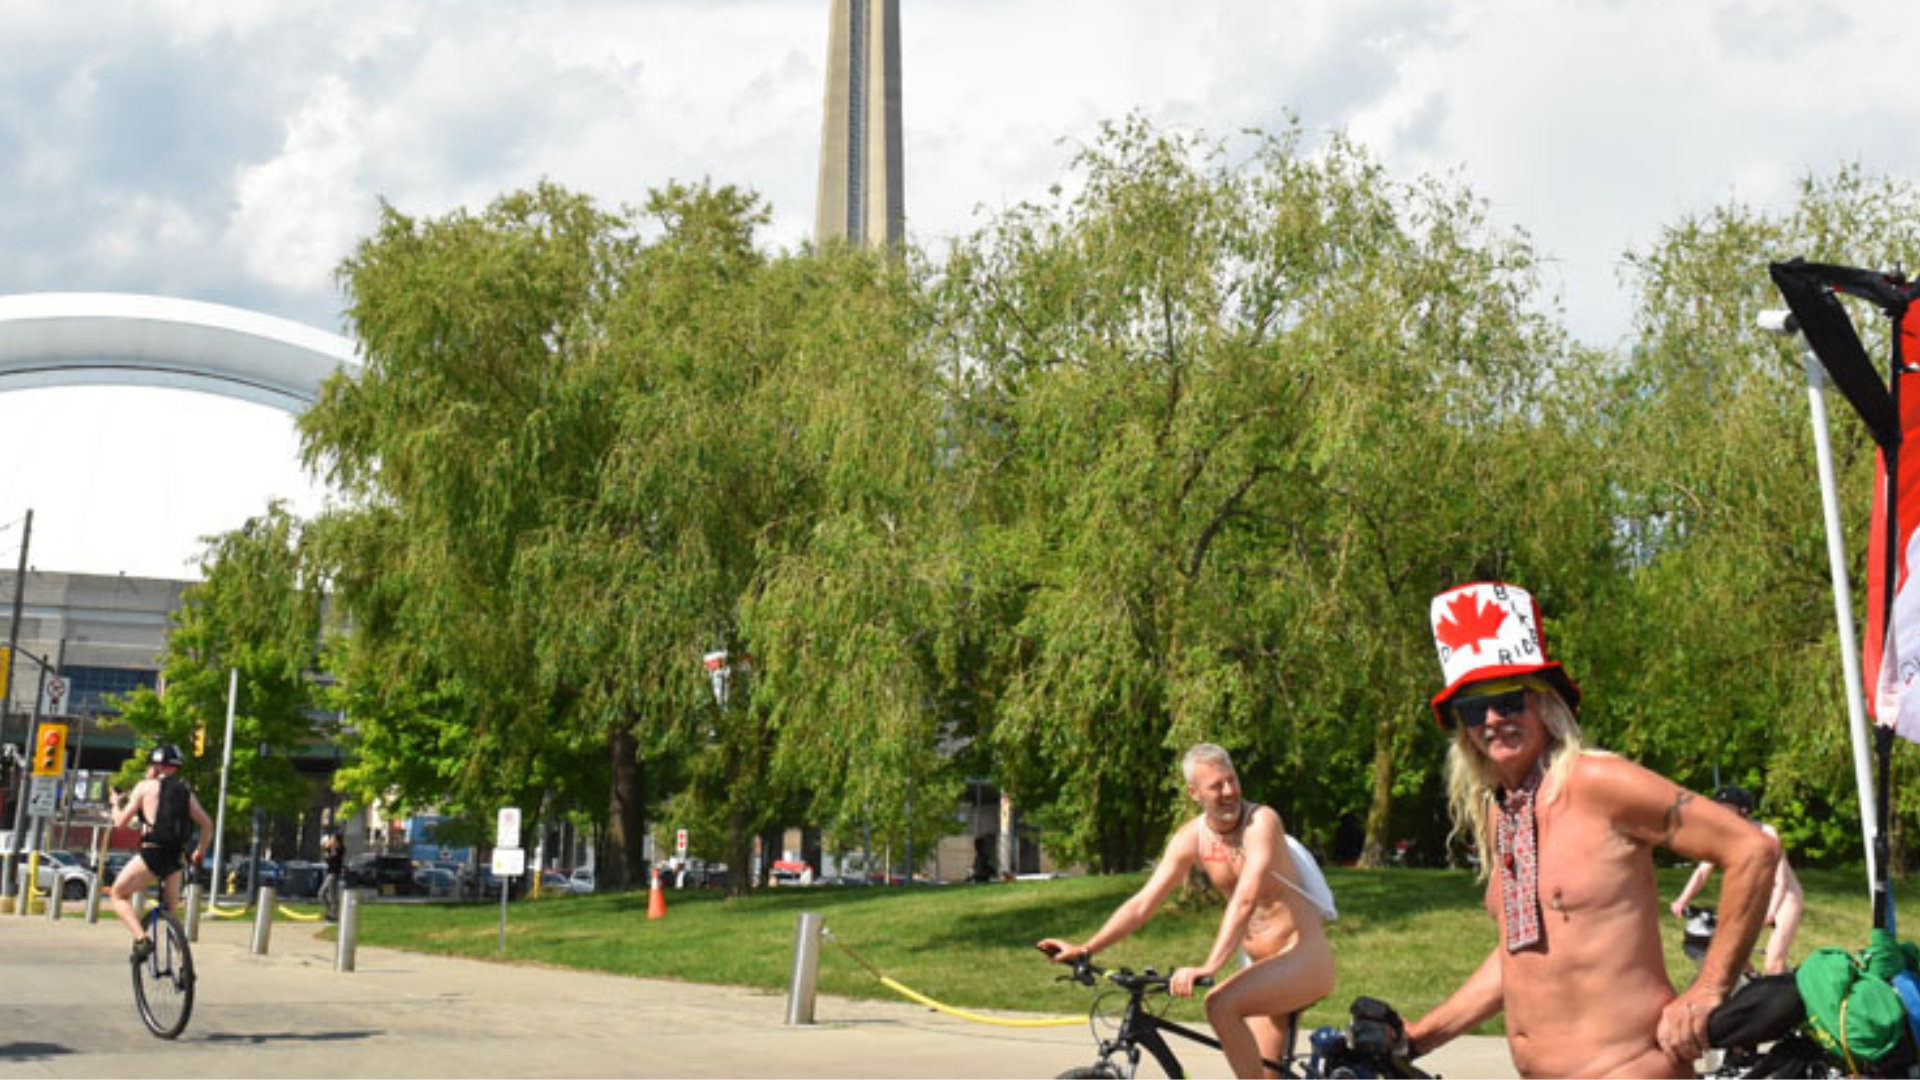 dewet van veijeren recommends Nude Bike Week